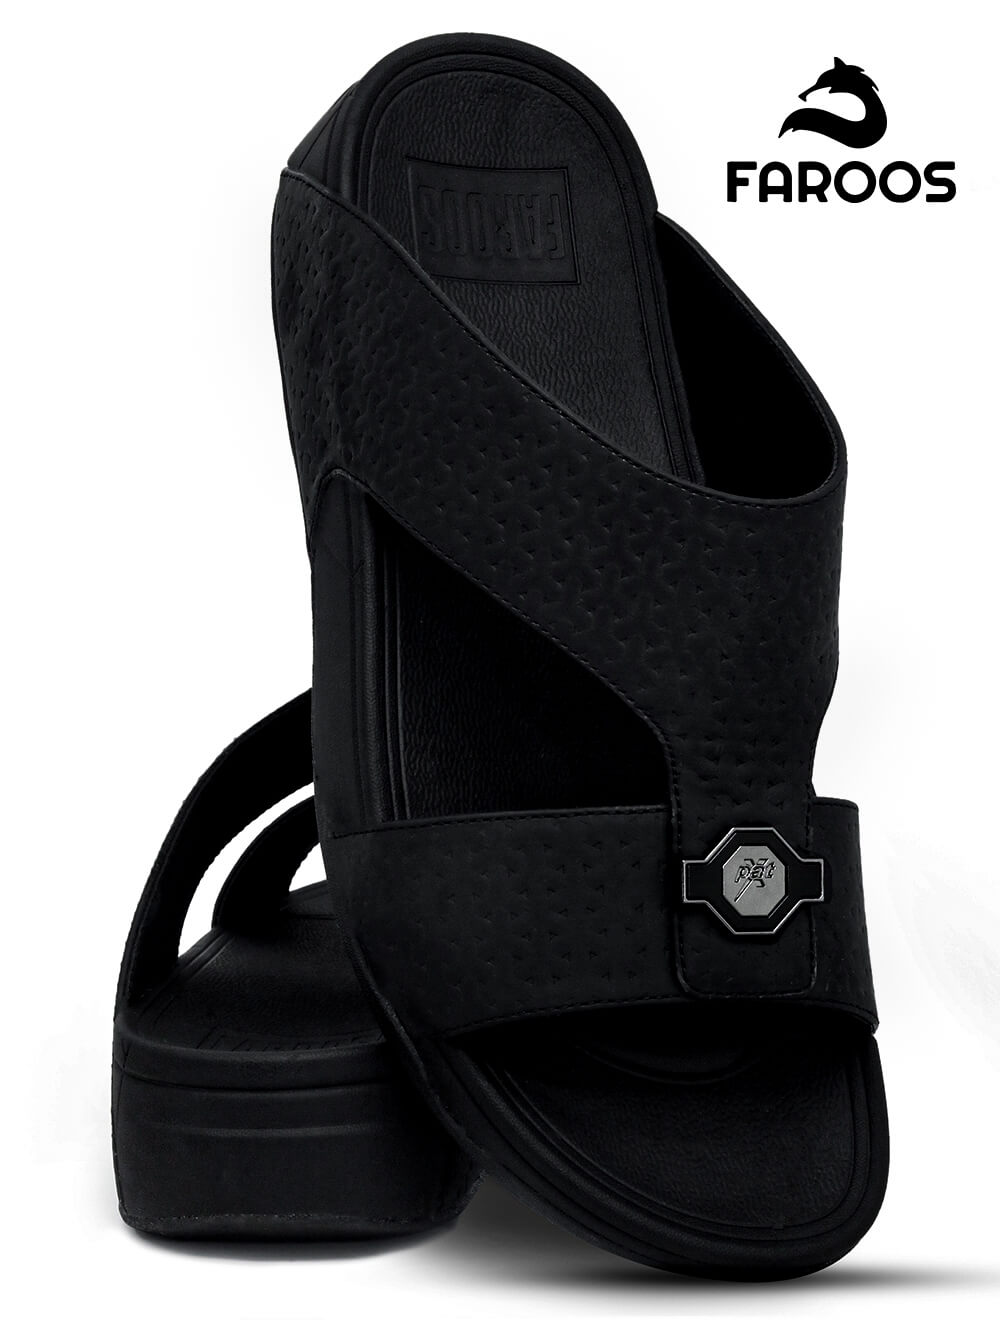 Faroos[F119]M061 Full Black Gents Arabic Sandal